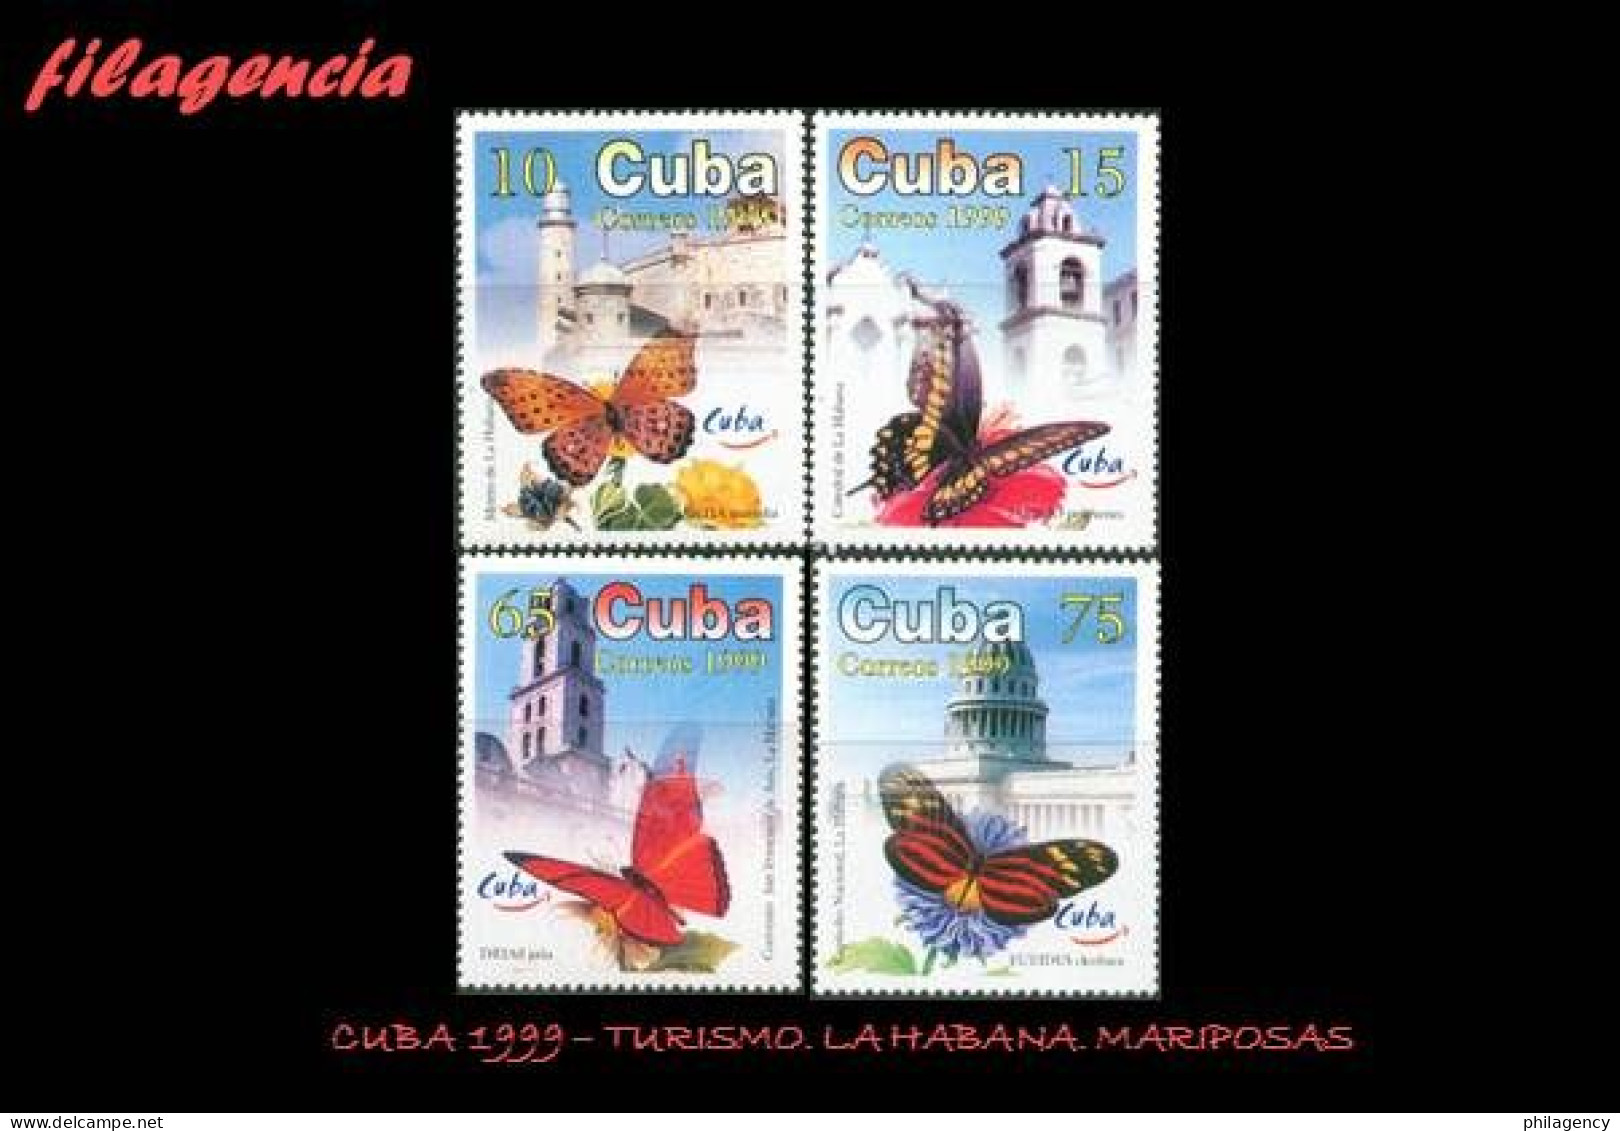 CUBA MINT. 1999-21 TURISMO. LA HABANA. MARIPOSAS - Unused Stamps